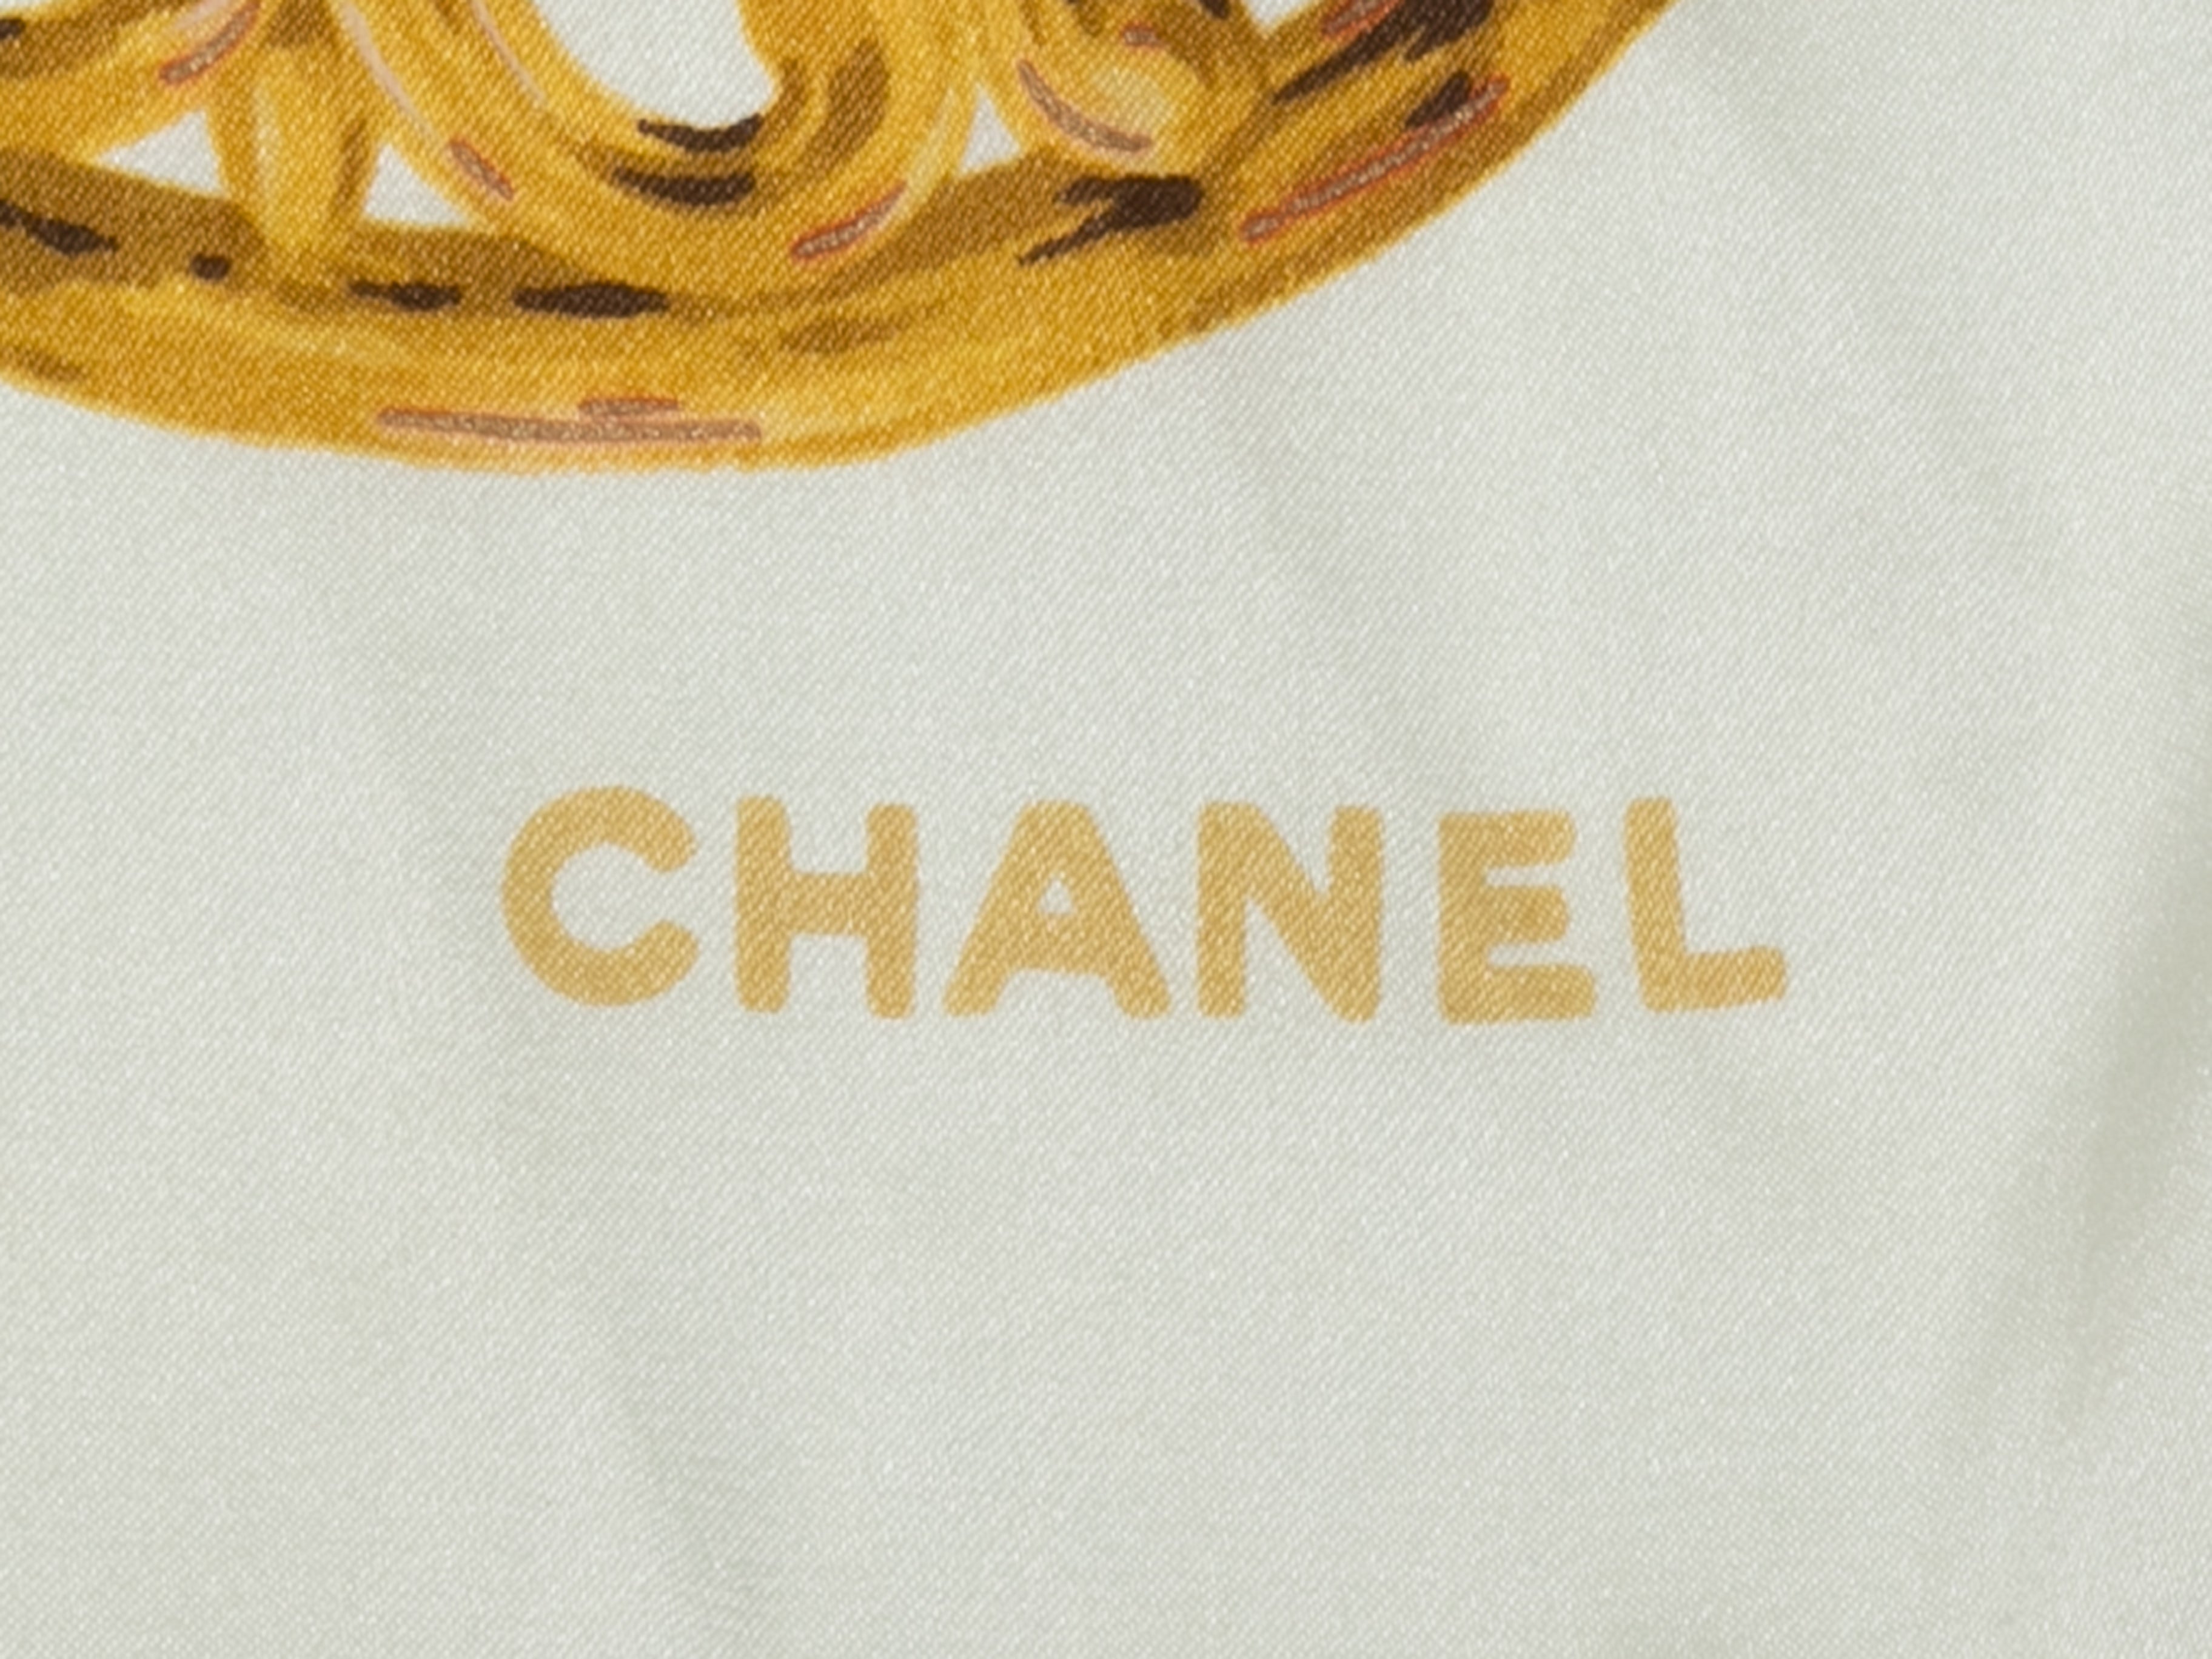 White & Multicolor Chanel Cabochon Print Silk Scarf - Designer Revival